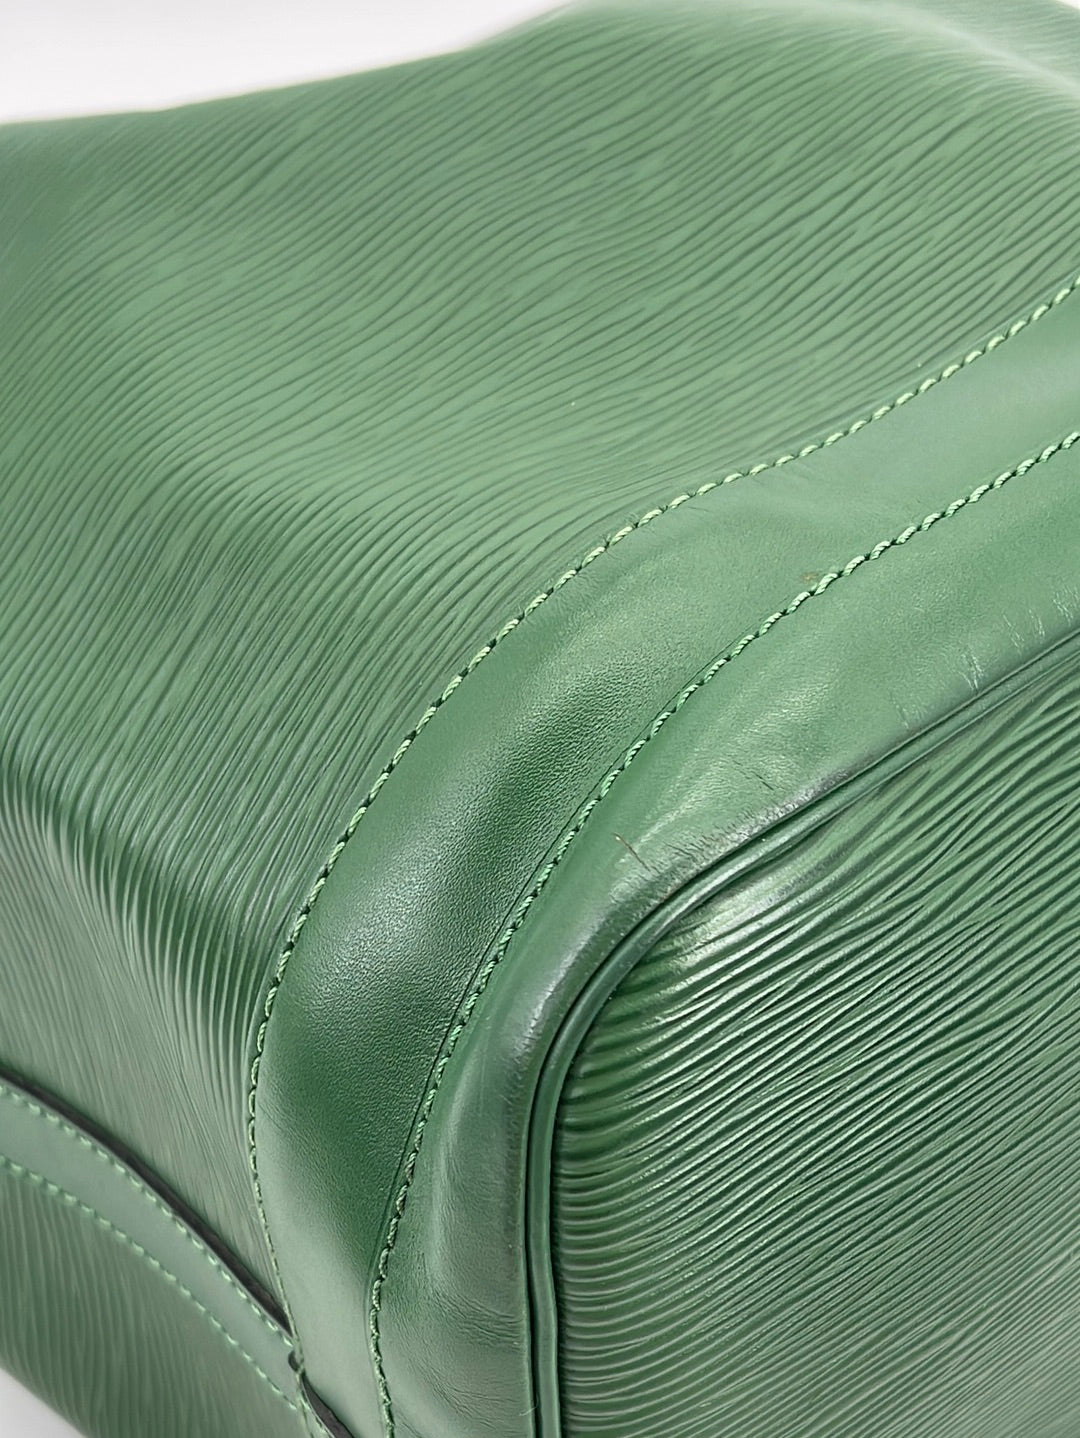 Louis Vuitton Vintage - Epi Alma PM - Green - Leather and Epi